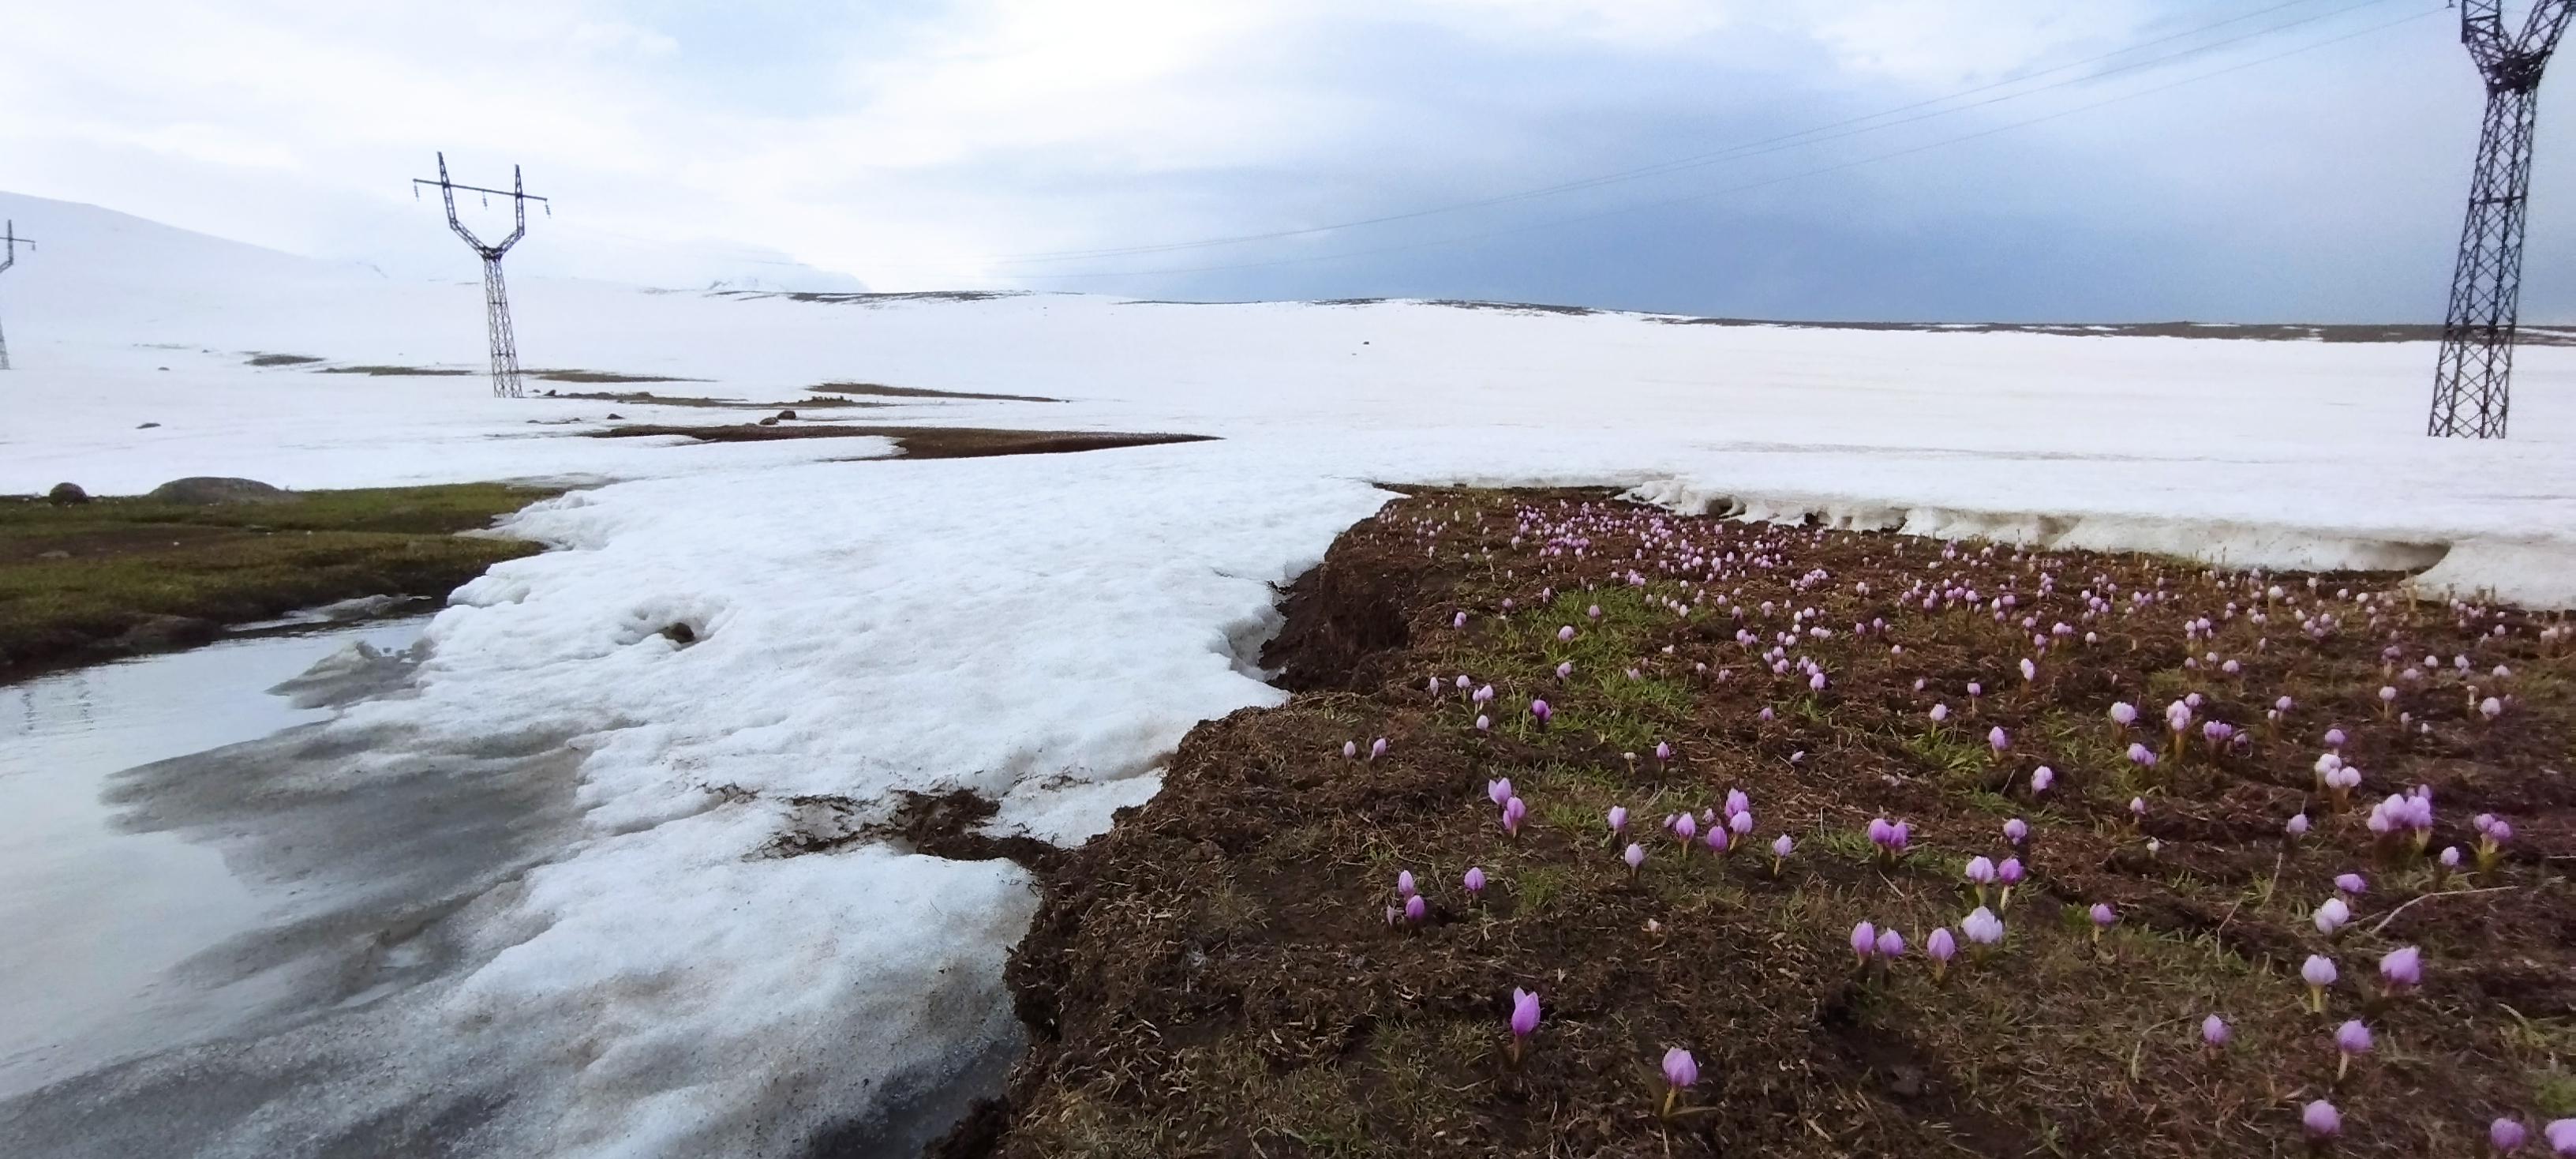 Snowdrops. Spring on Aragats mountain, Armenia. Altitude 4000m, photo taken at ~3500m.jpeg